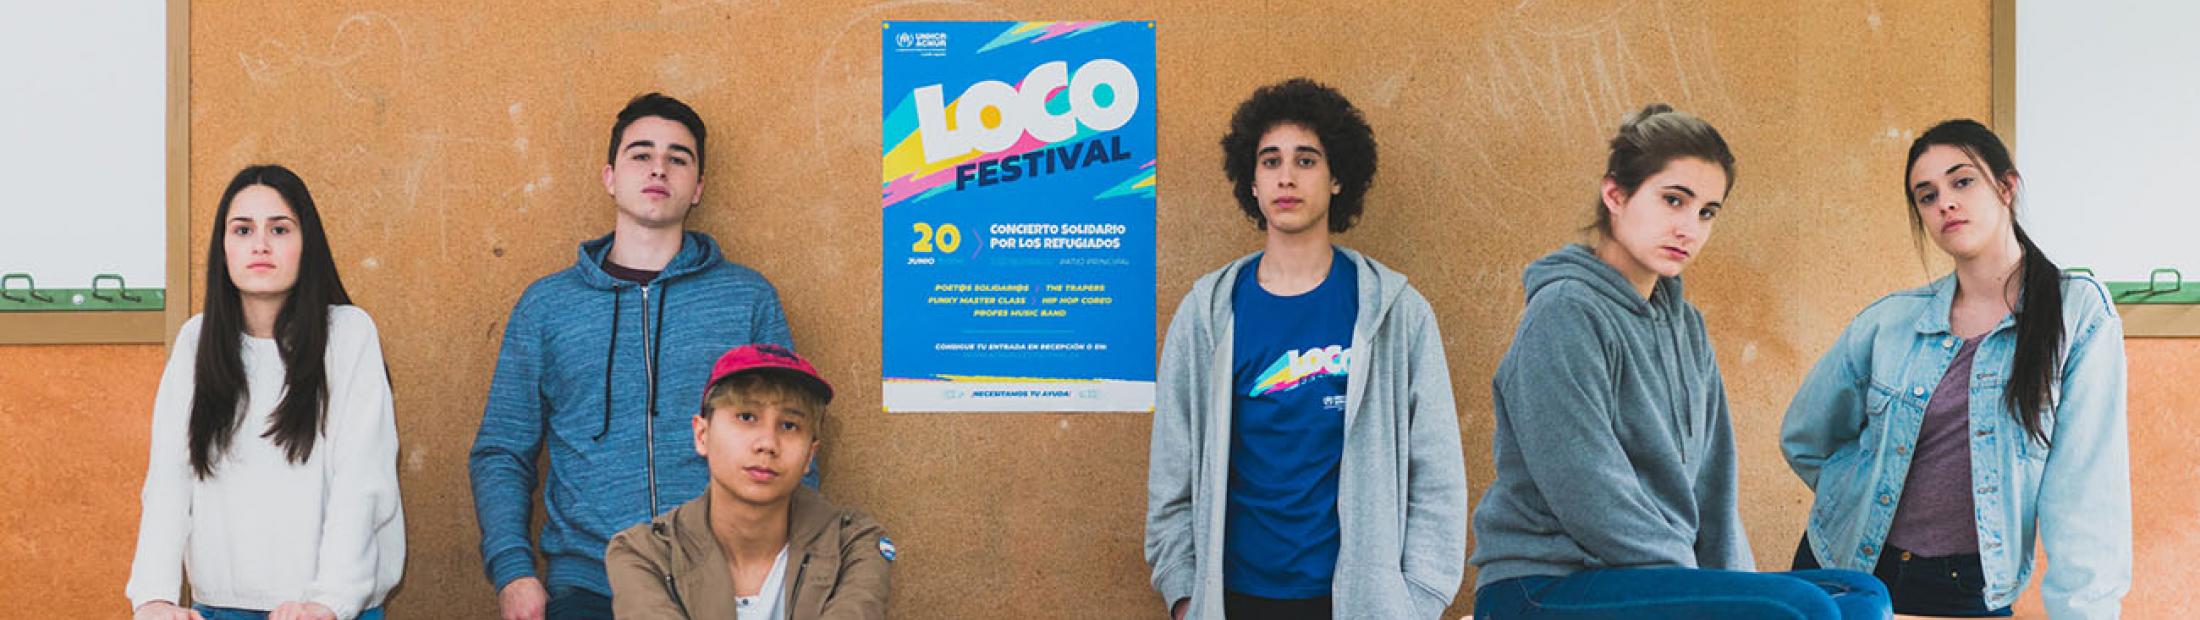 Loco Festival, solidaridad en los centros educativos